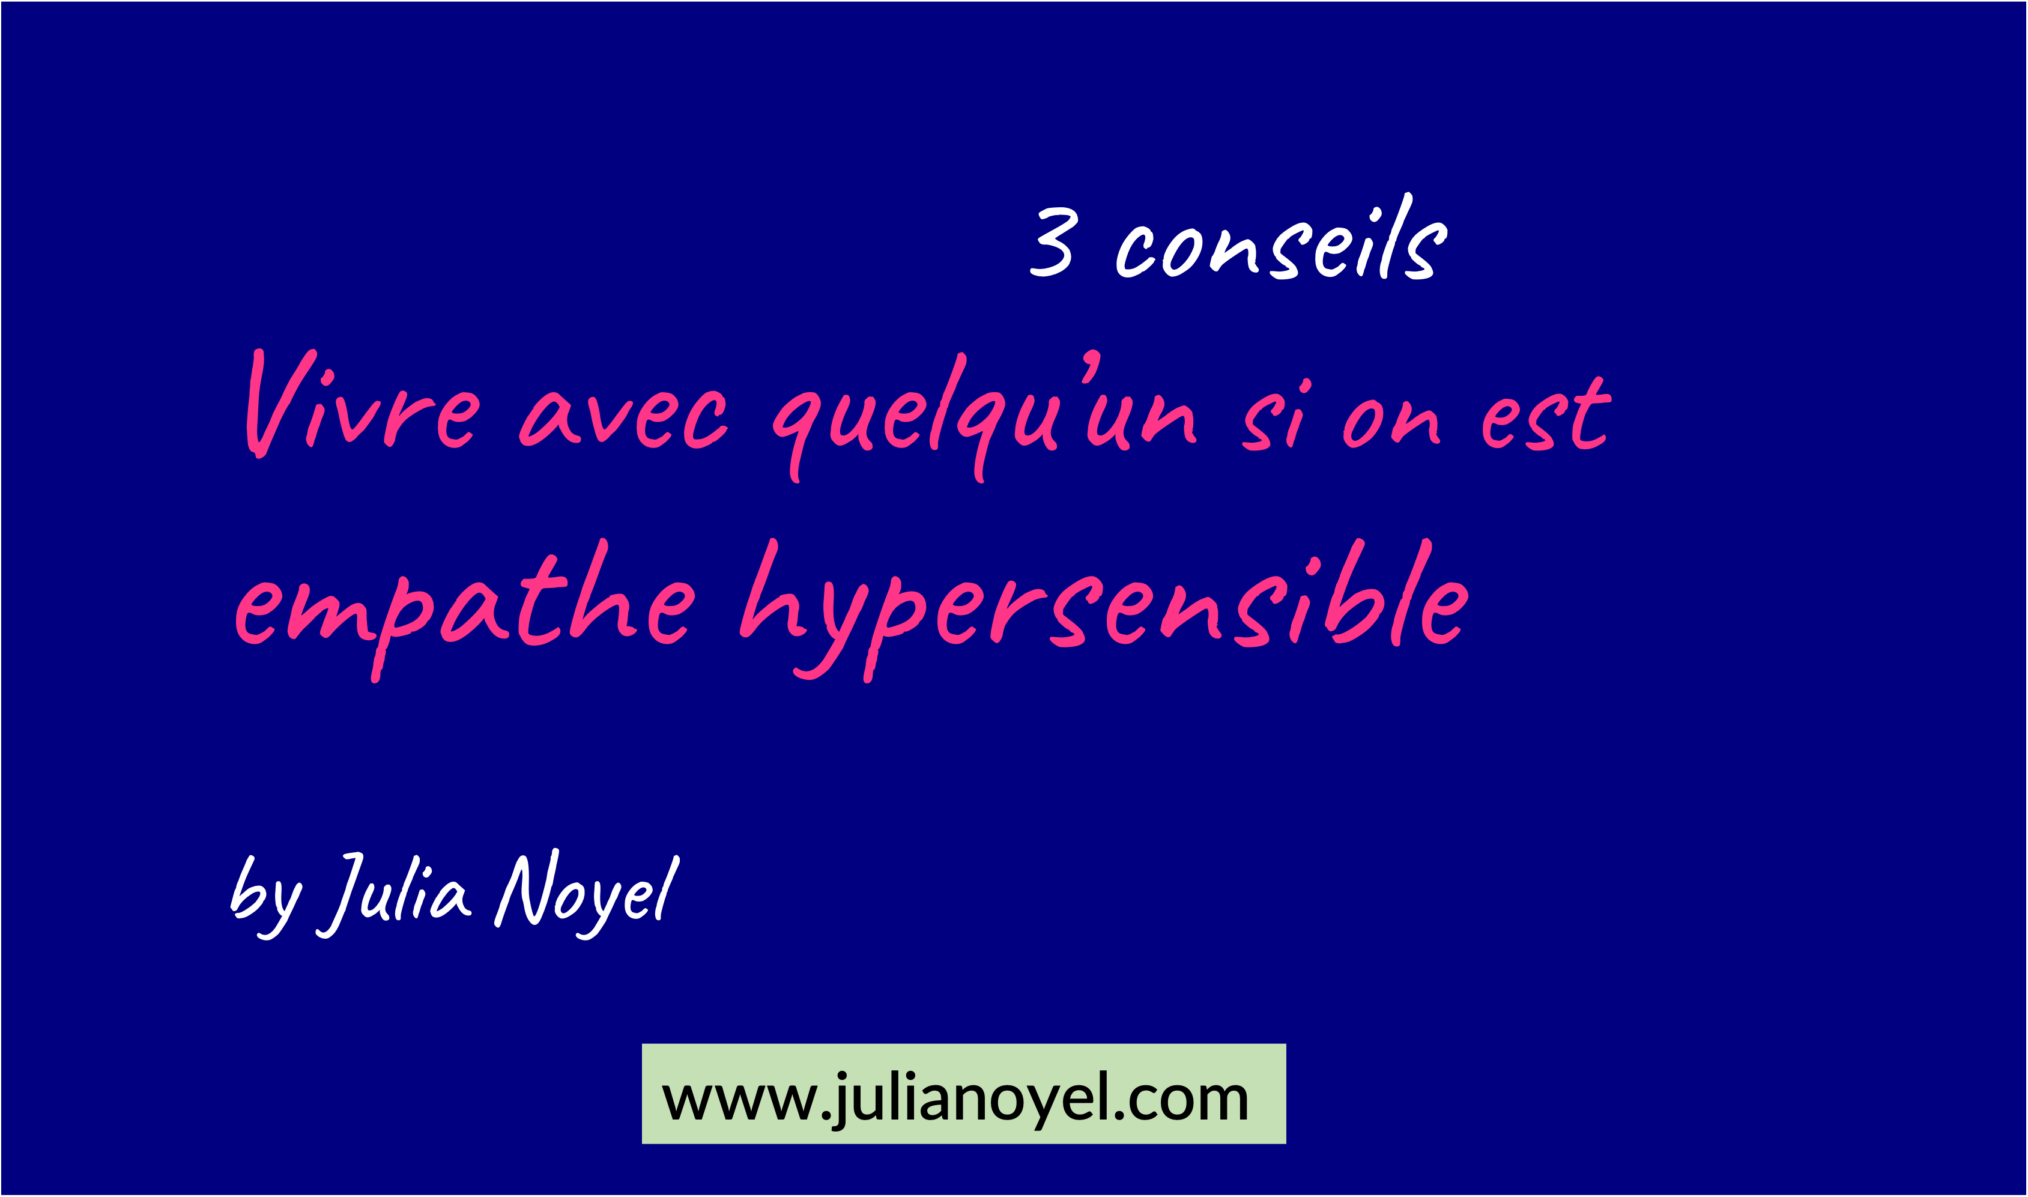 3 conseils Vivre avec quelqu’un si on est empathe hypersensible by Julia Noyel